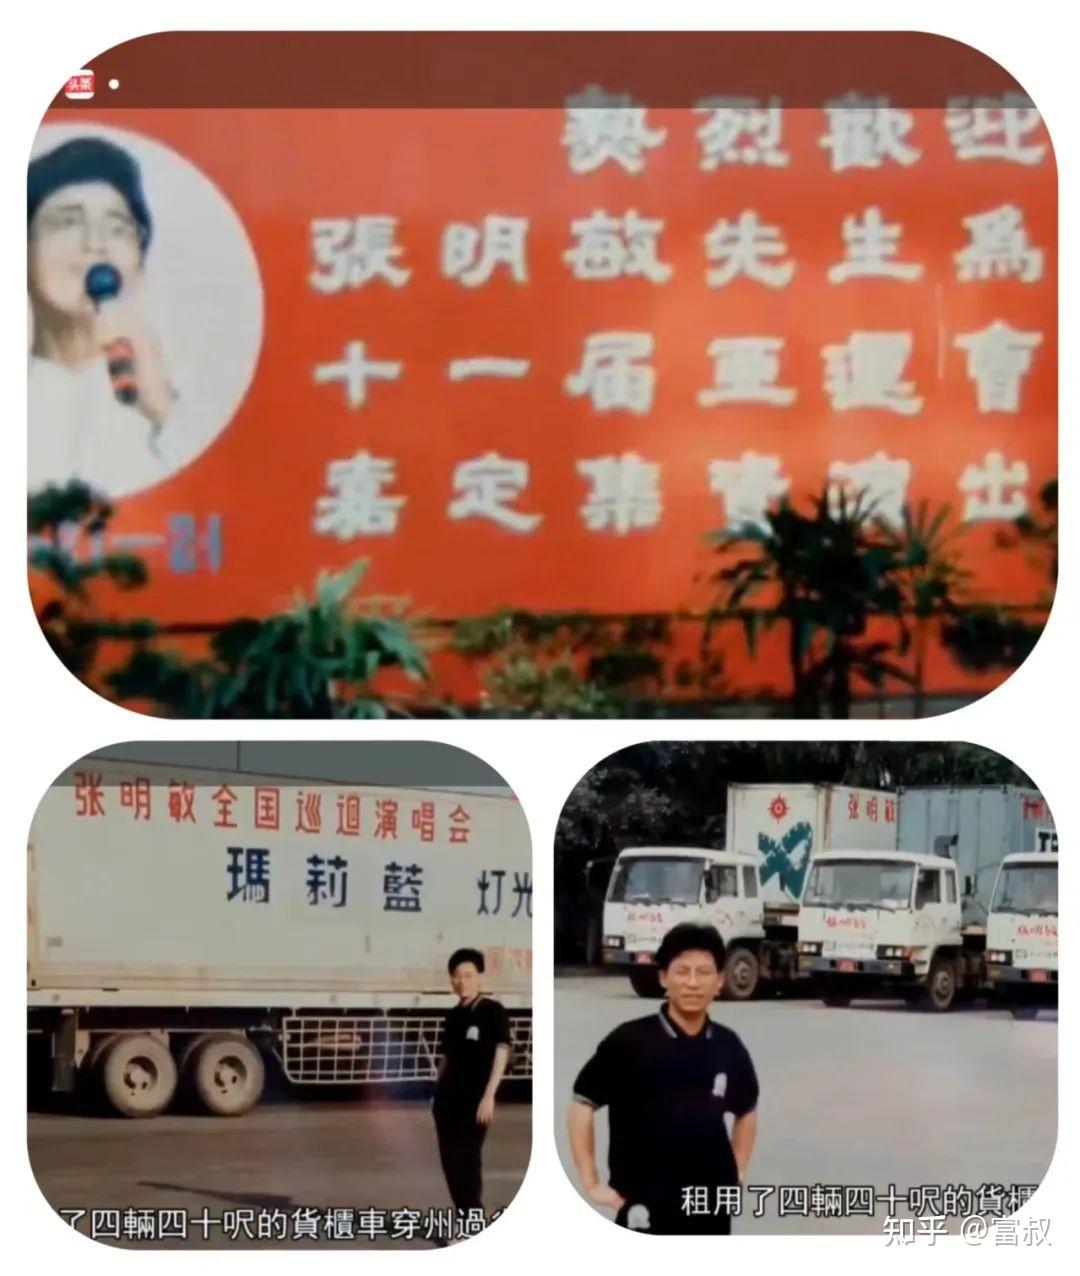 张明敏:一曲《我的中国心》春晚爆红,为北京亚运会义演卖房卖车,妻子